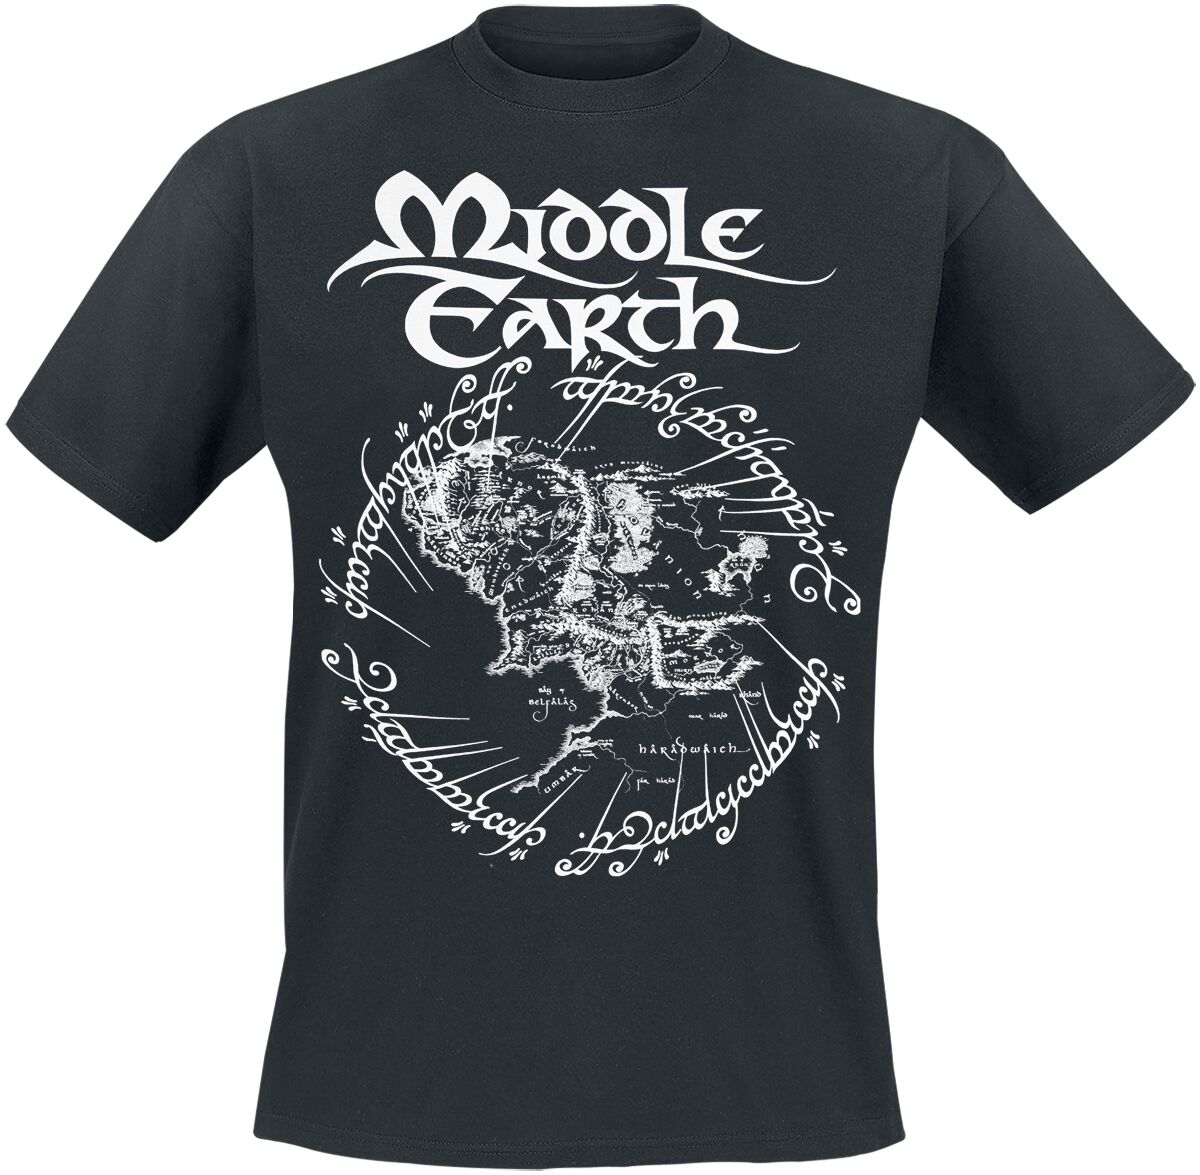 Der Herr der Ringe T-Shirt - Middle Earth - S bis 3XL - für Männer - Größe S - schwarz  - Lizenzierter Fanartikel